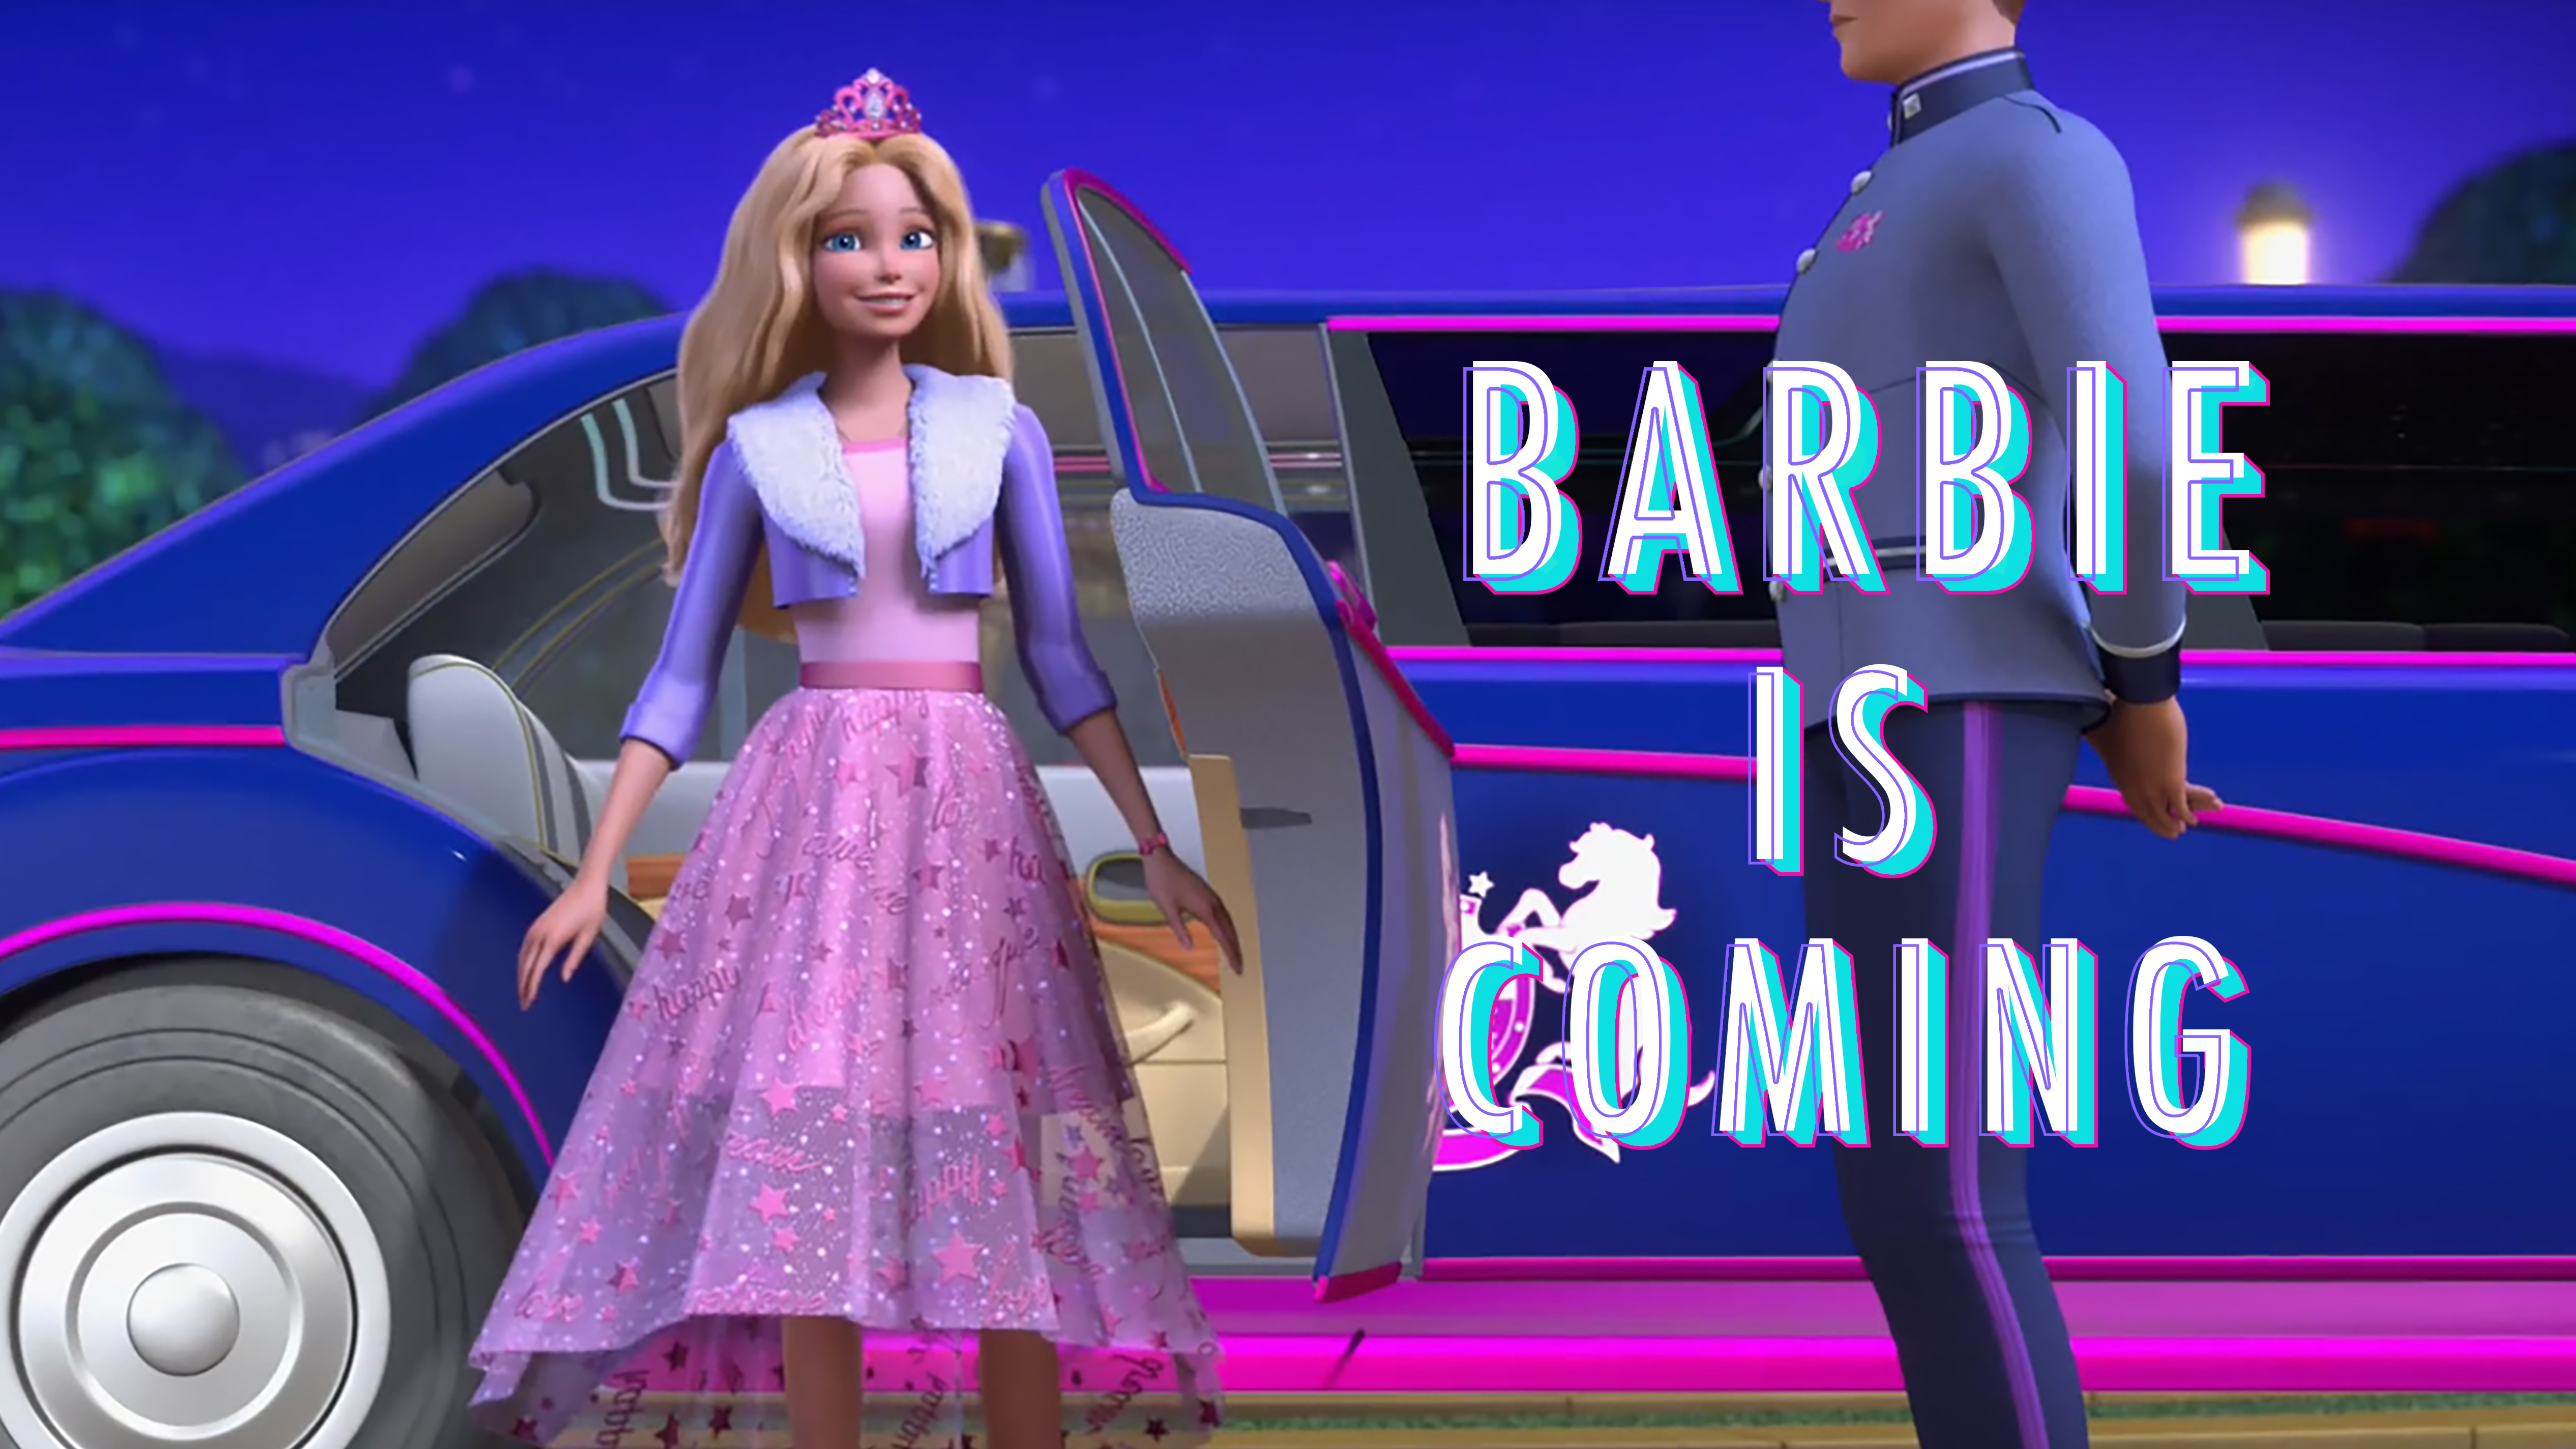 芭比全新动画力作《芭比公主历险记》有望引进 重拾少女心 再做公主梦